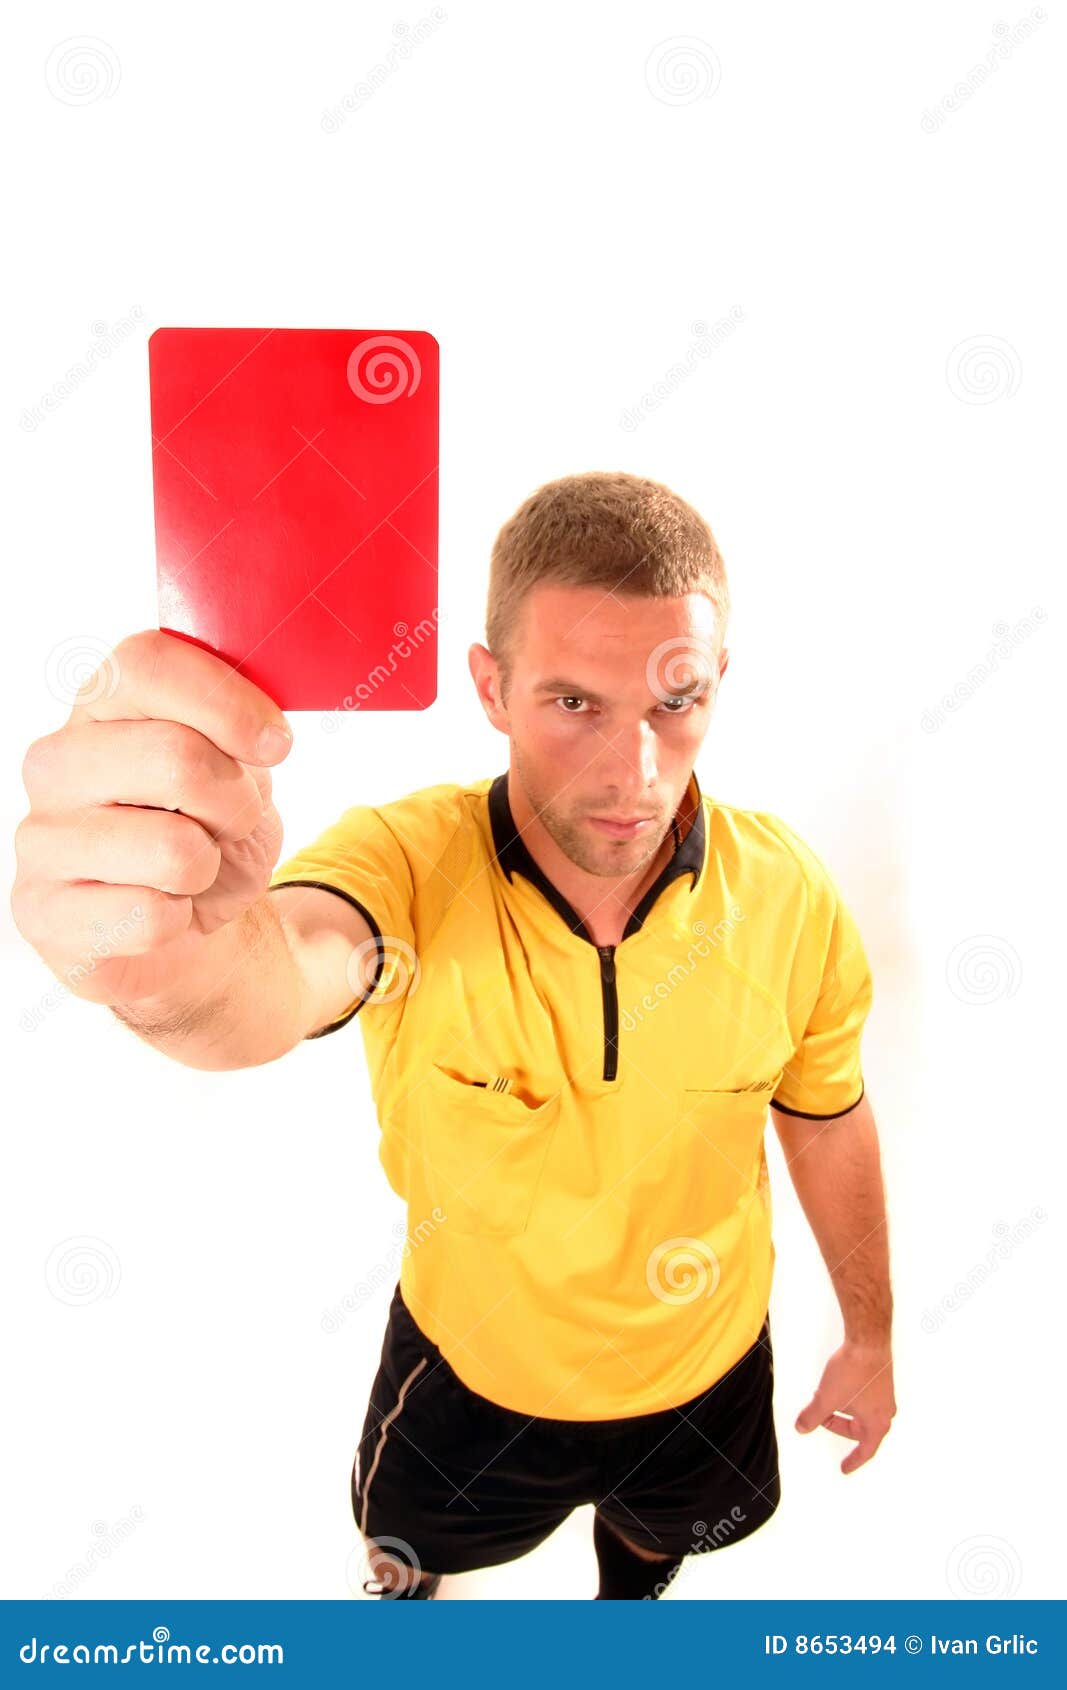 Jogador de futebol mostra carta do UNO a juiz depois de receber cartão  amarelo - Área Geral - eplay